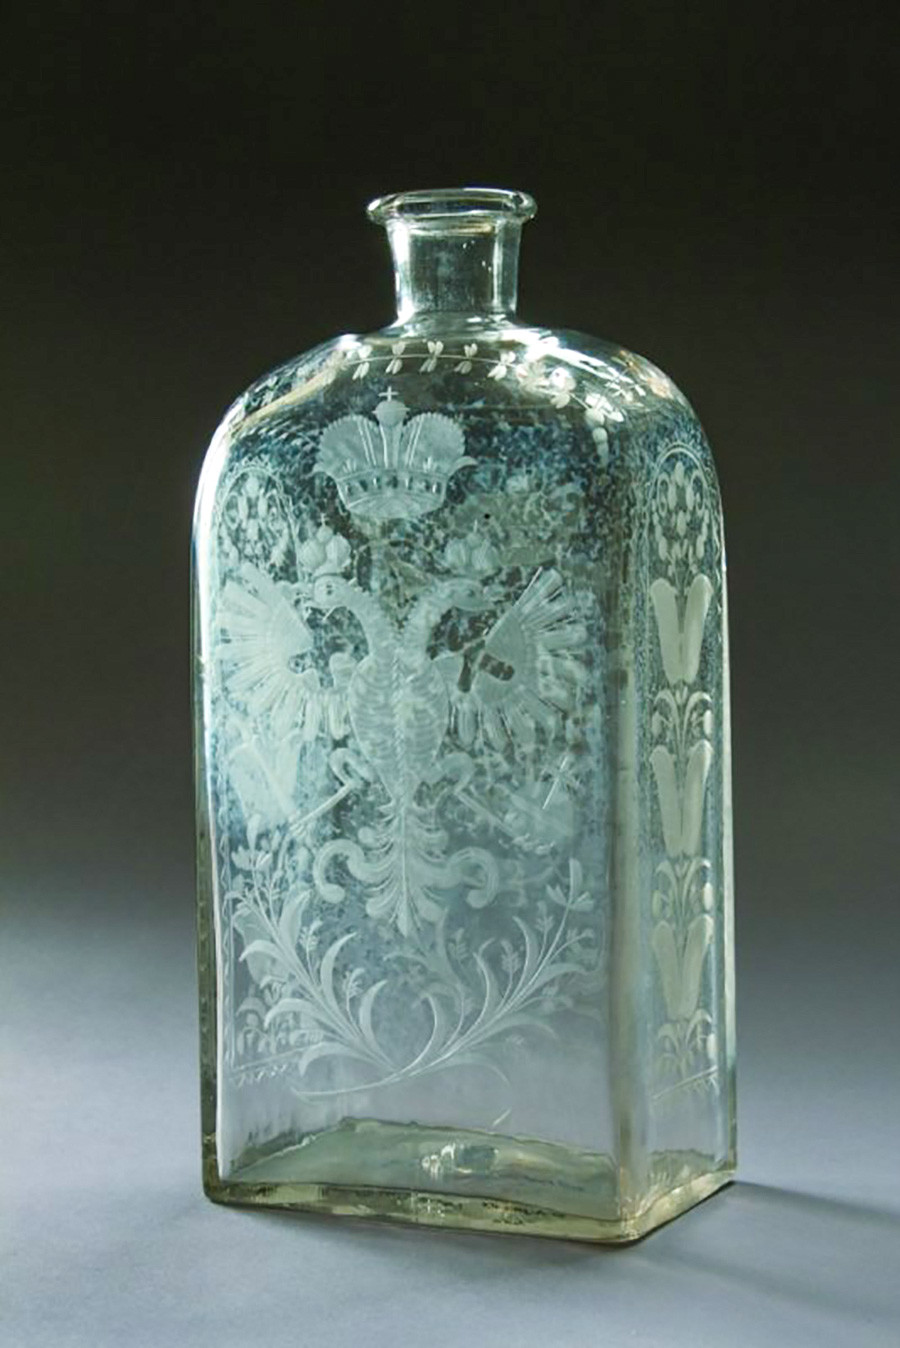 Штоф (боца од 1,23 л; стара мера за запремину течности и за стаклену флашу која је служила за алкохолна пића). Средина 18. века. Безбојно матирано стакло. Фабрика у Петербургу.